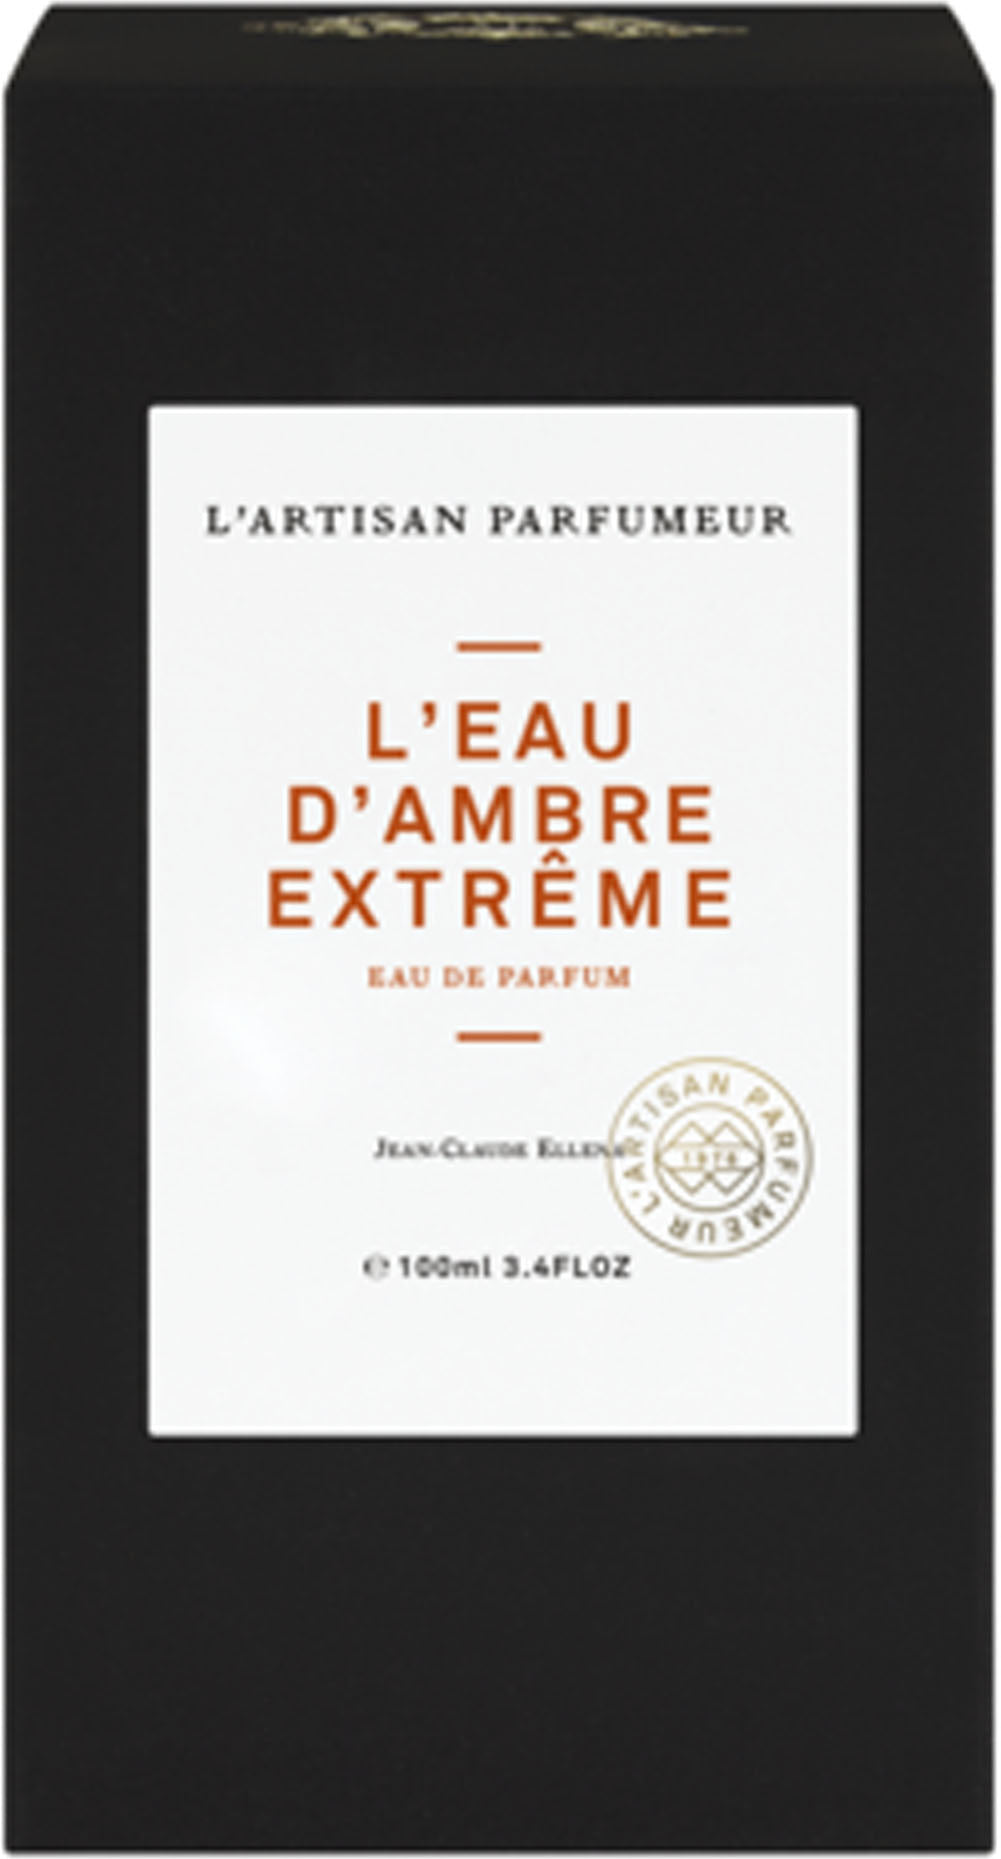 The Eau d'Ambre Extreme